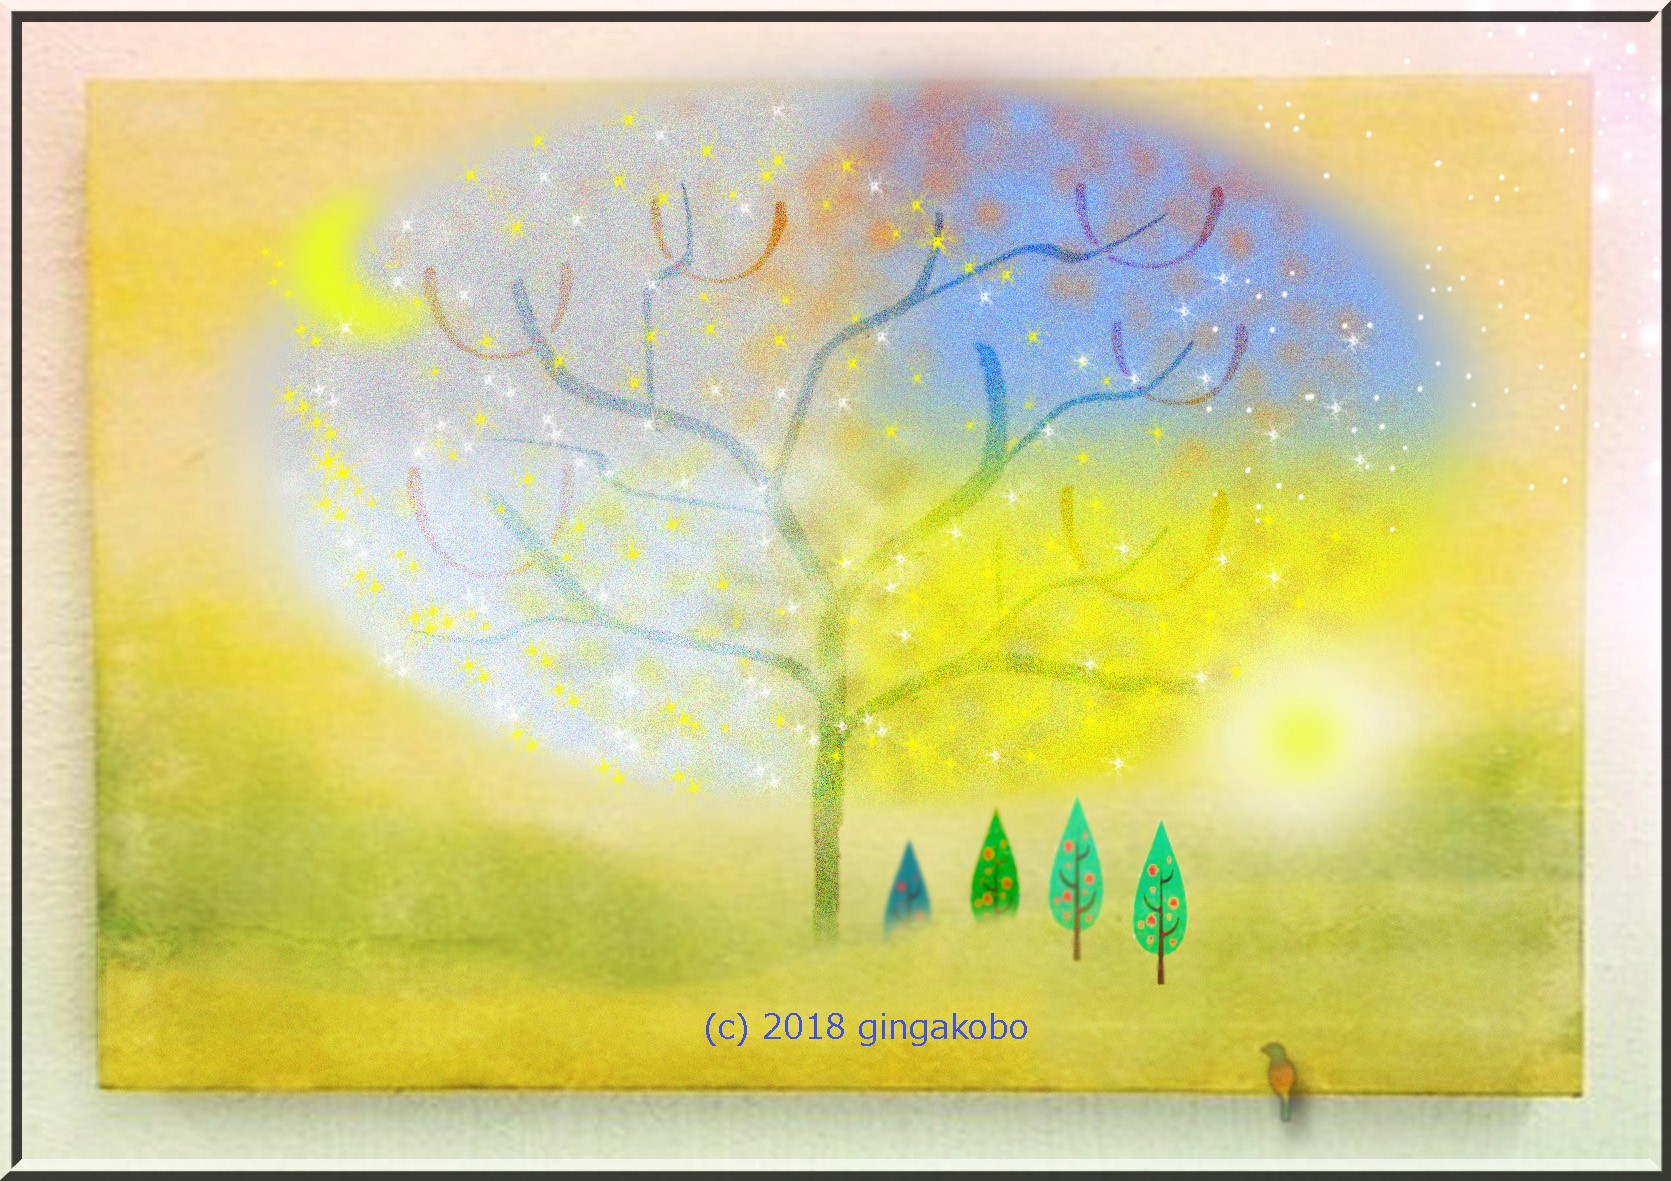 四季のうた ほっこり癒しのイラストa4サイズポスターno 574 Iichi ハンドメイド クラフト作品 手仕事品の通販